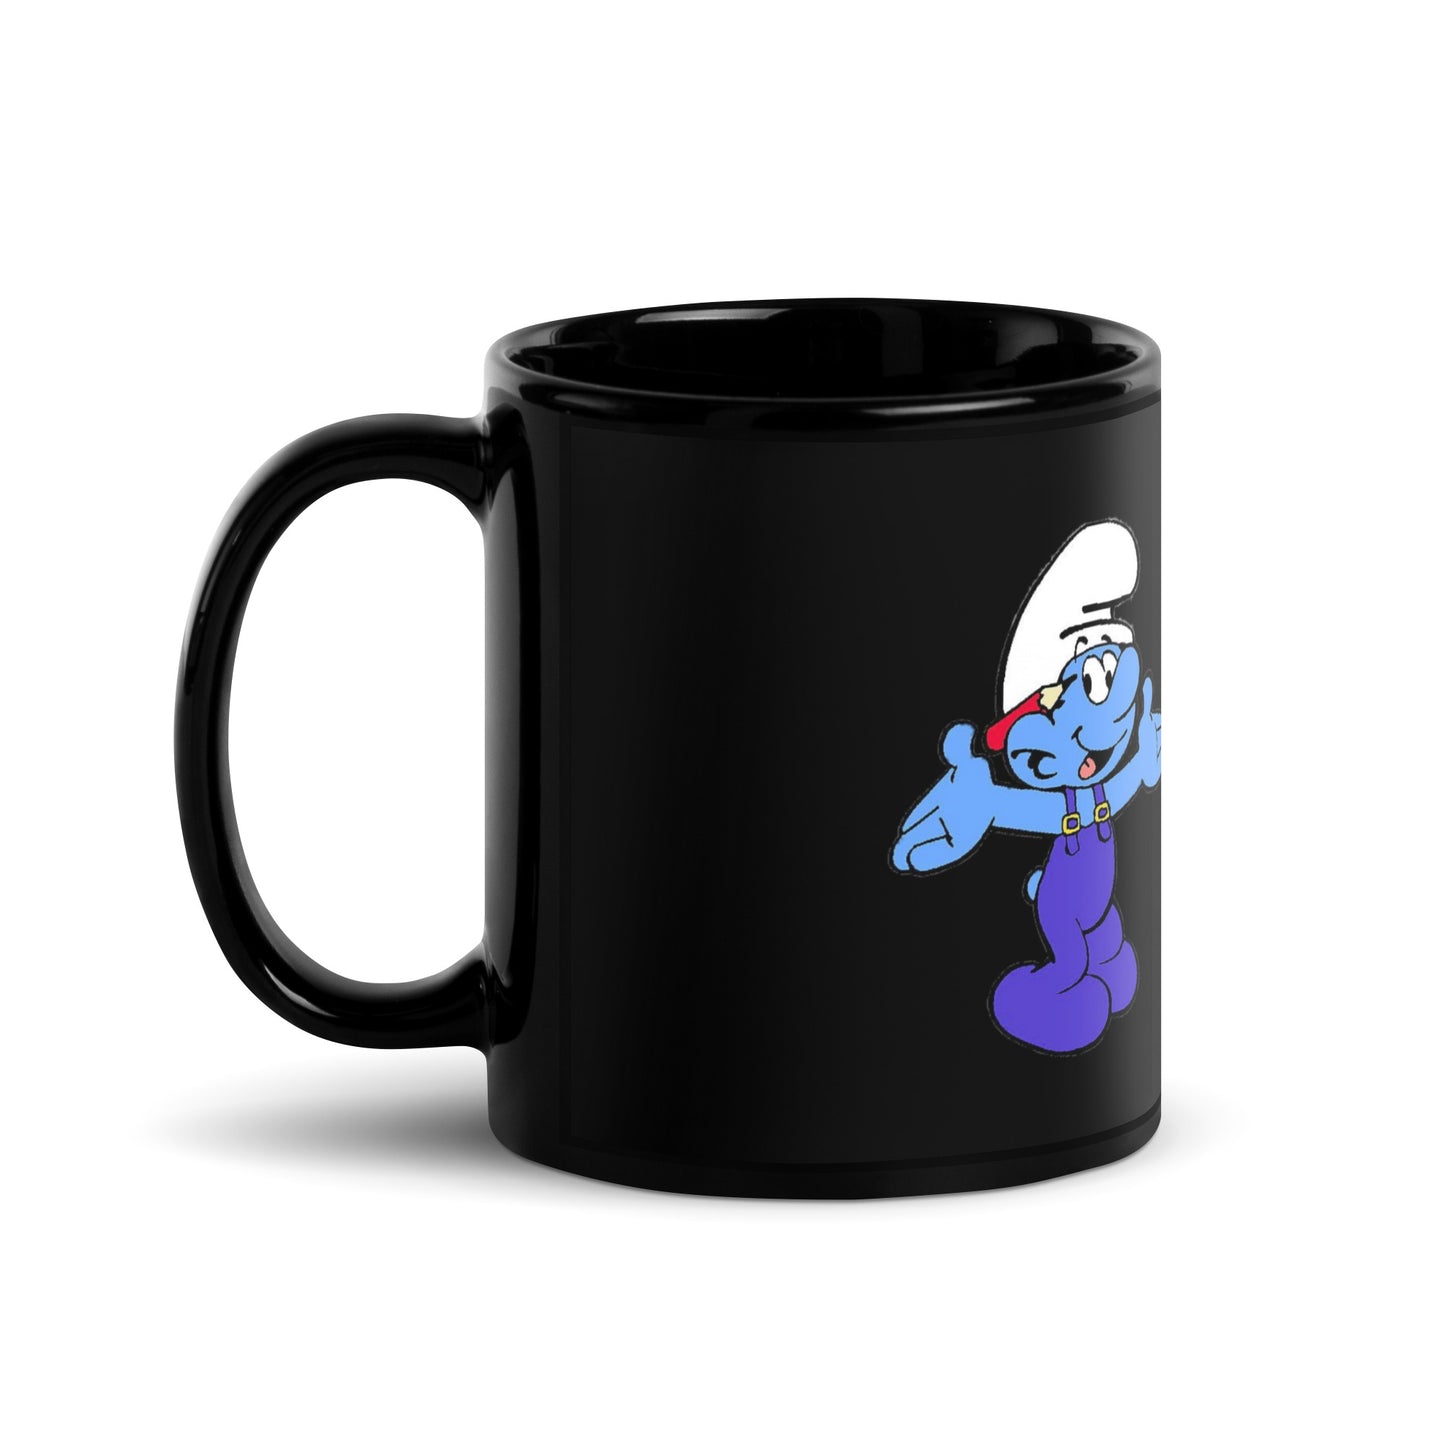 Smurf's Mug 'talk to myself' funny ceramic coffee mug.